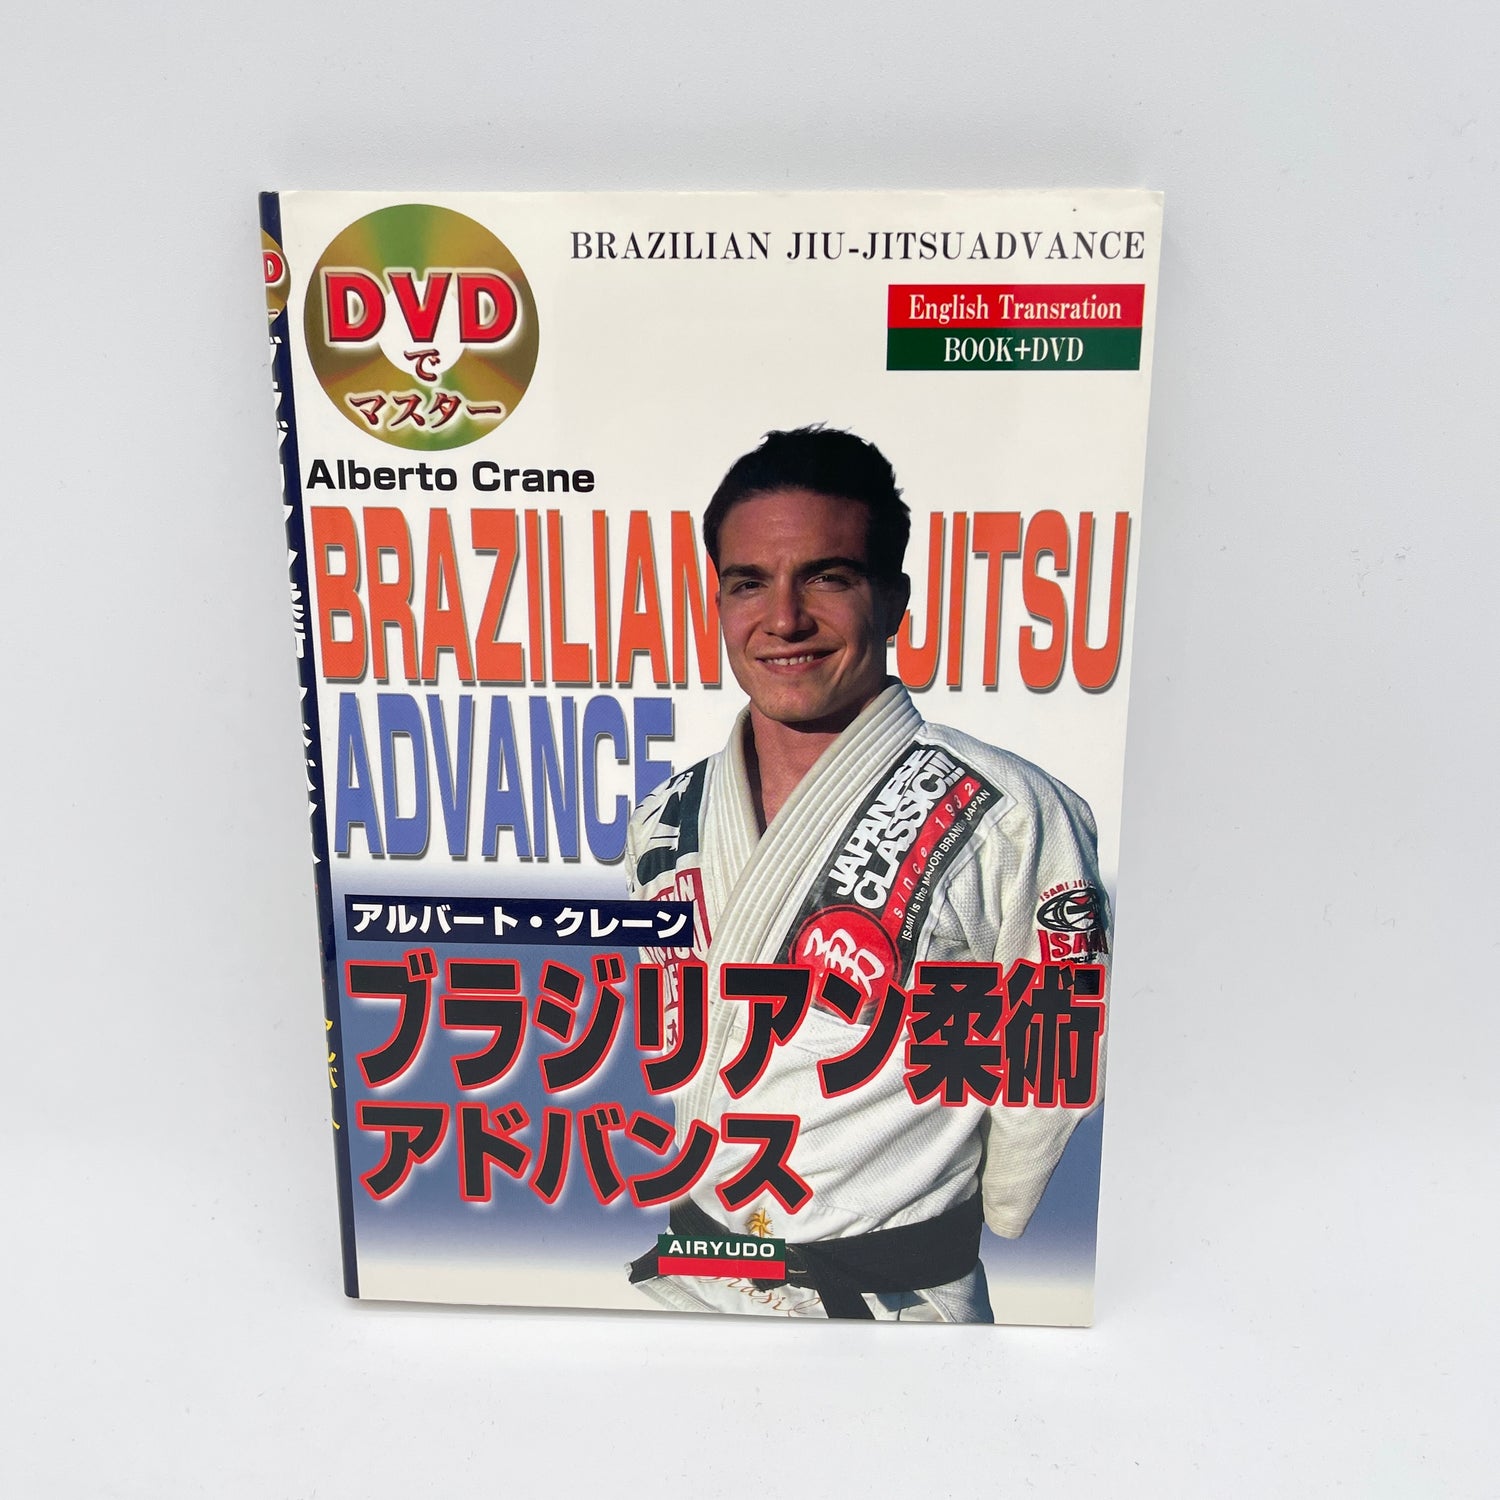 Libro y DVD avanzado de BJJ de Alberto Crane (usado)